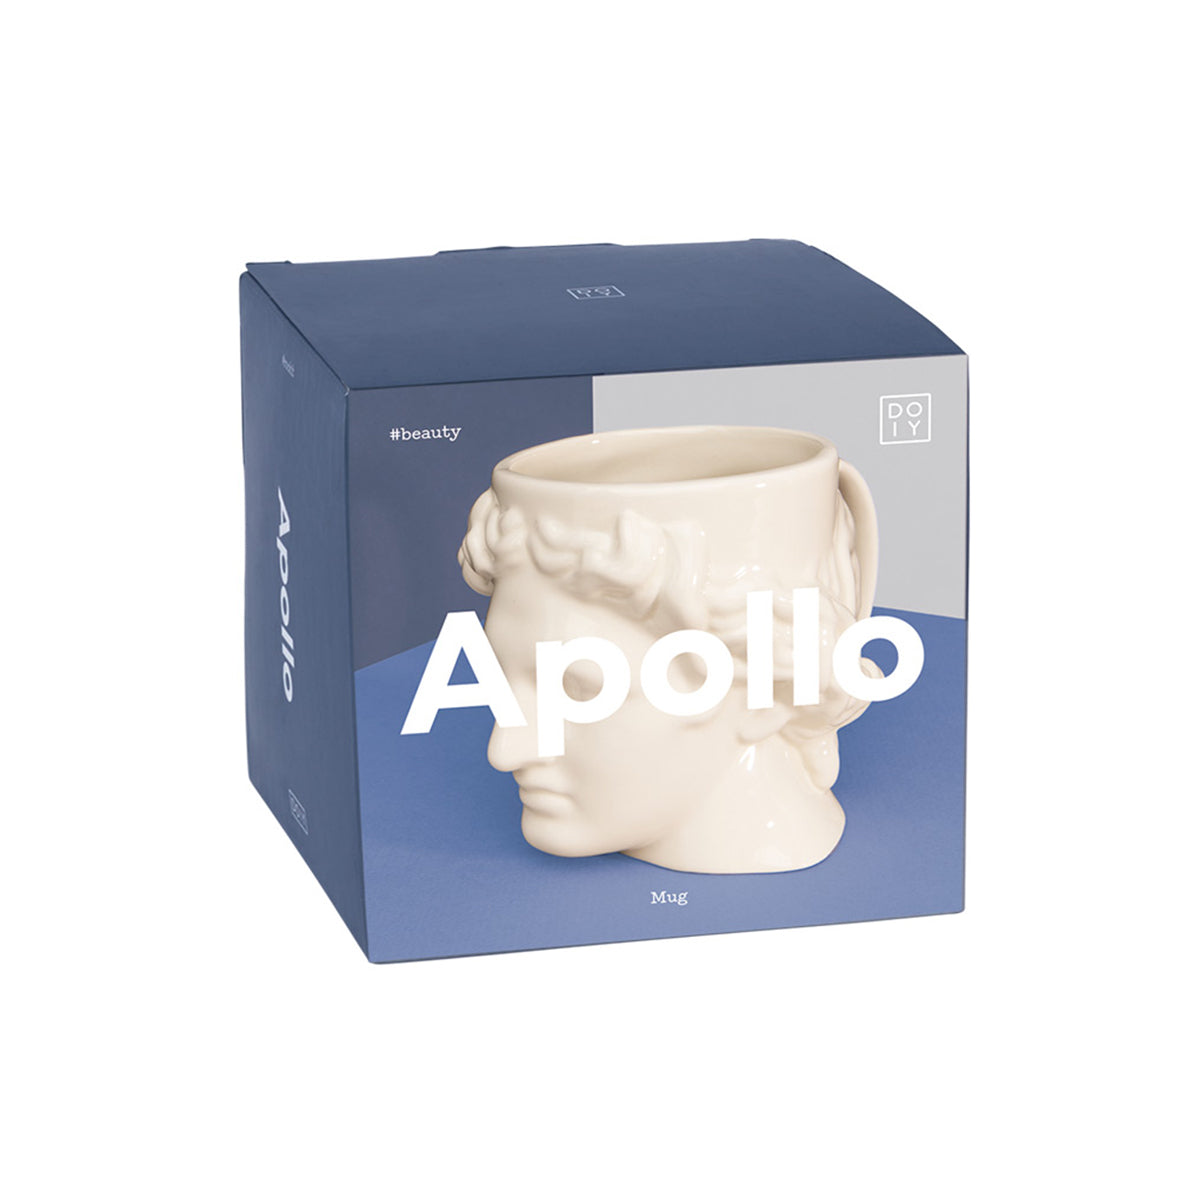 Apollo Mug White